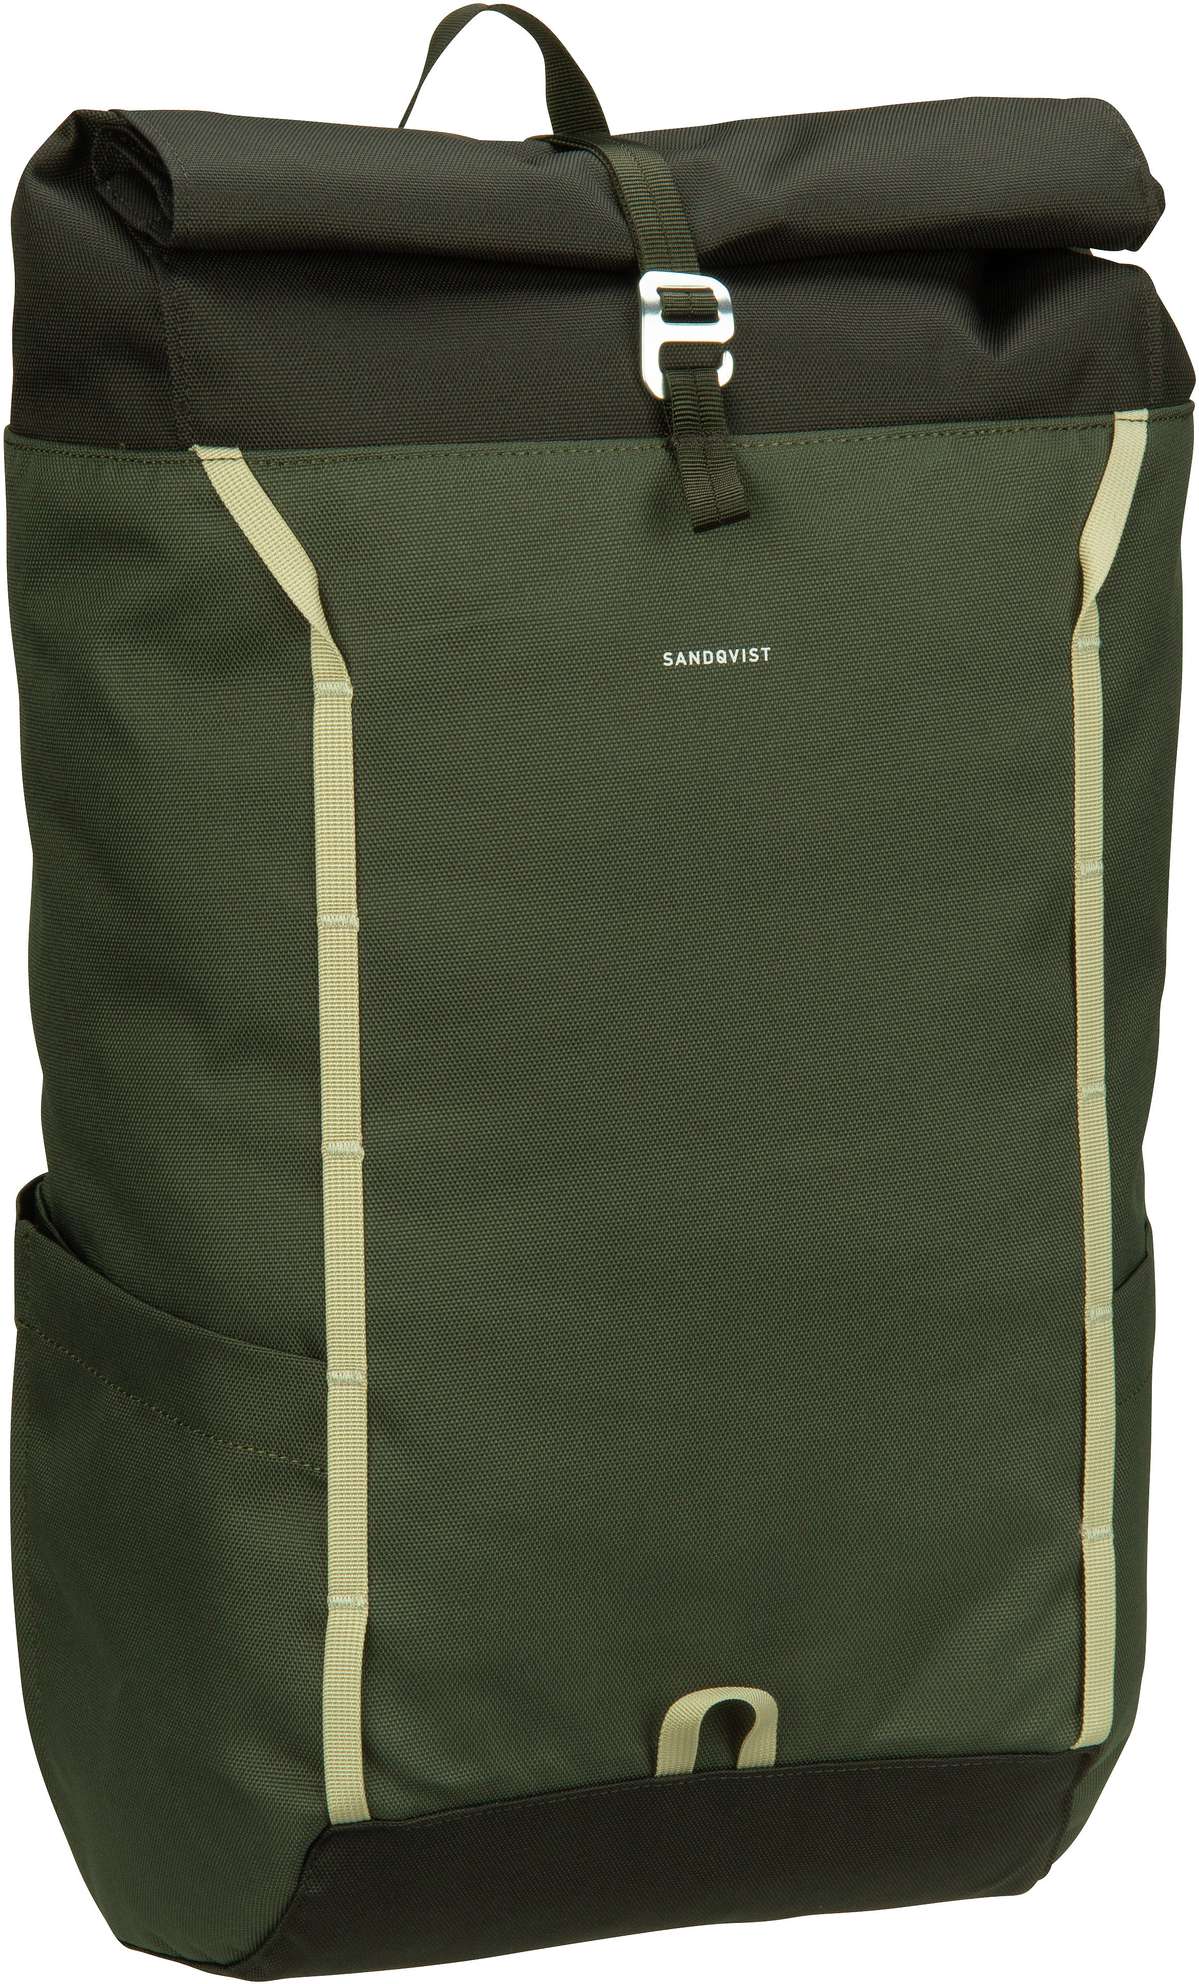 Sandqvist Arvid Rolltop Backpack - Multi Green/Grey Webbing